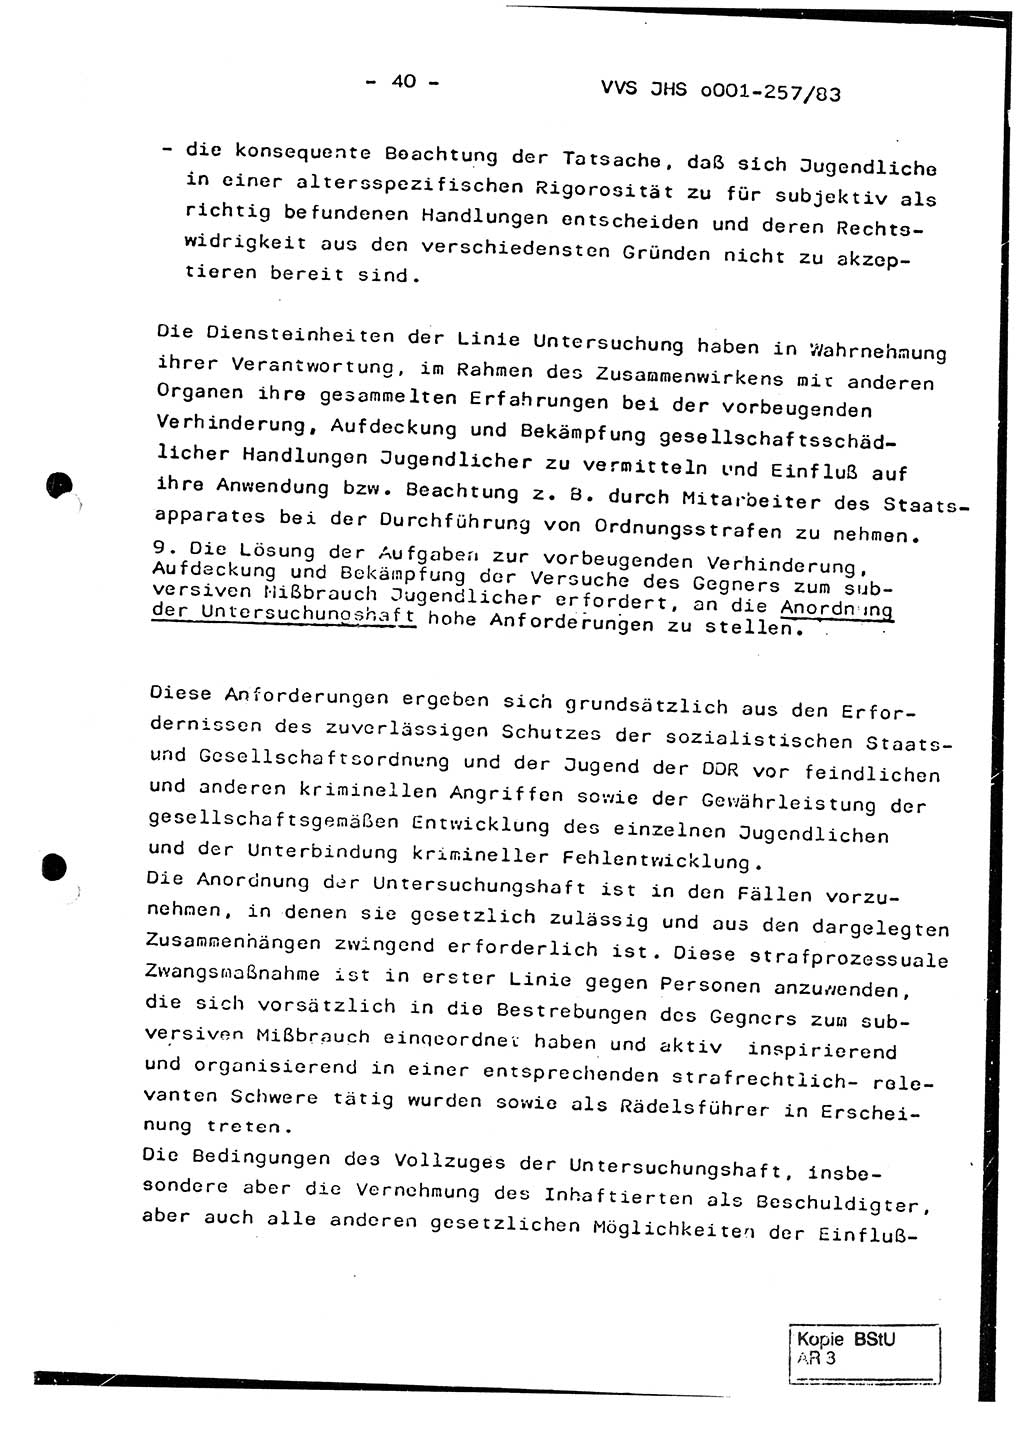 Dissertation, Oberst Helmut Lubas (BV Mdg.), Oberstleutnant Manfred Eschberger (HA IX), Oberleutnant Hans-Jürgen Ludwig (JHS), Ministerium für Staatssicherheit (MfS) [Deutsche Demokratische Republik (DDR)], Juristische Hochschule (JHS), Vertrauliche Verschlußsache (VVS) o001-257/83, Potsdam 1983, Seite 40 (Diss. MfS DDR JHS VVS o001-257/83 1983, S. 40)